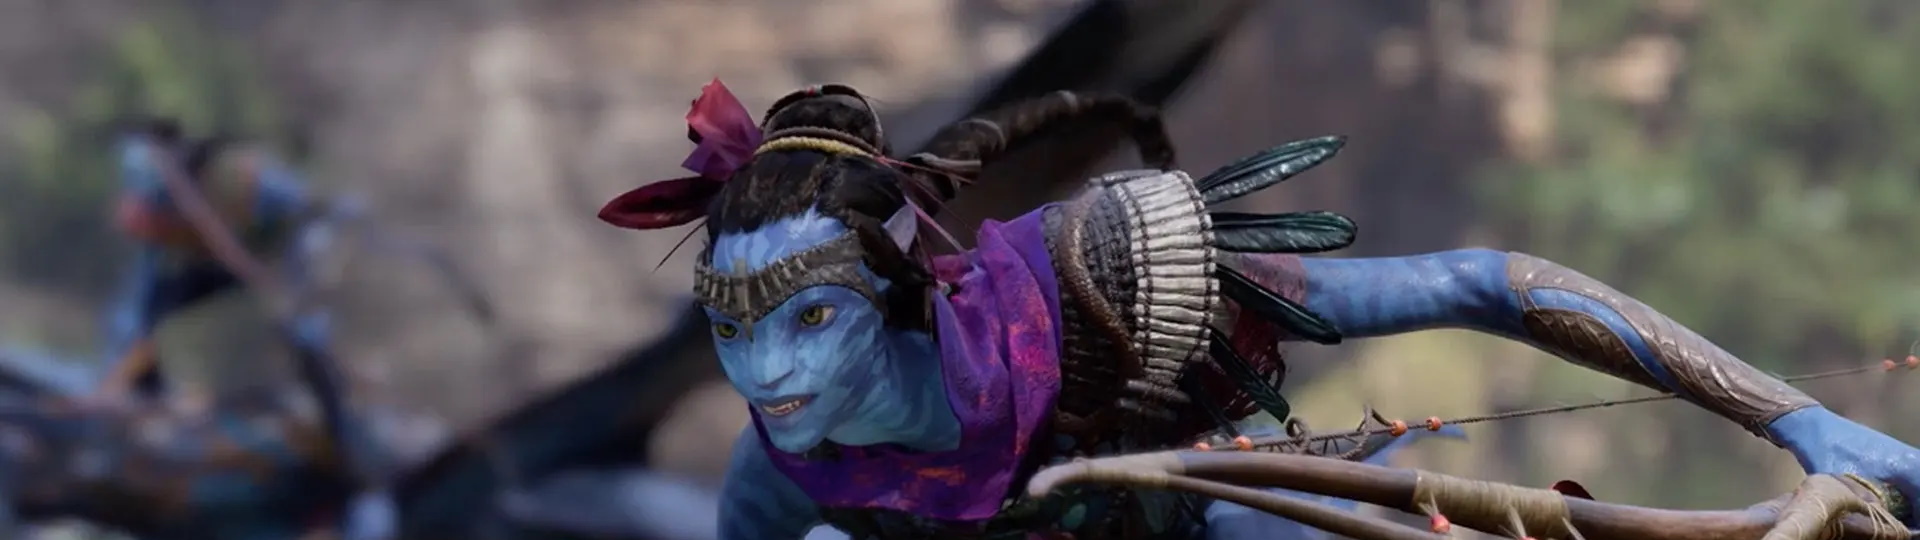 Avatar: Frontiers of Pandora vypadá jako velmi pěkné dobrodružství | Videa